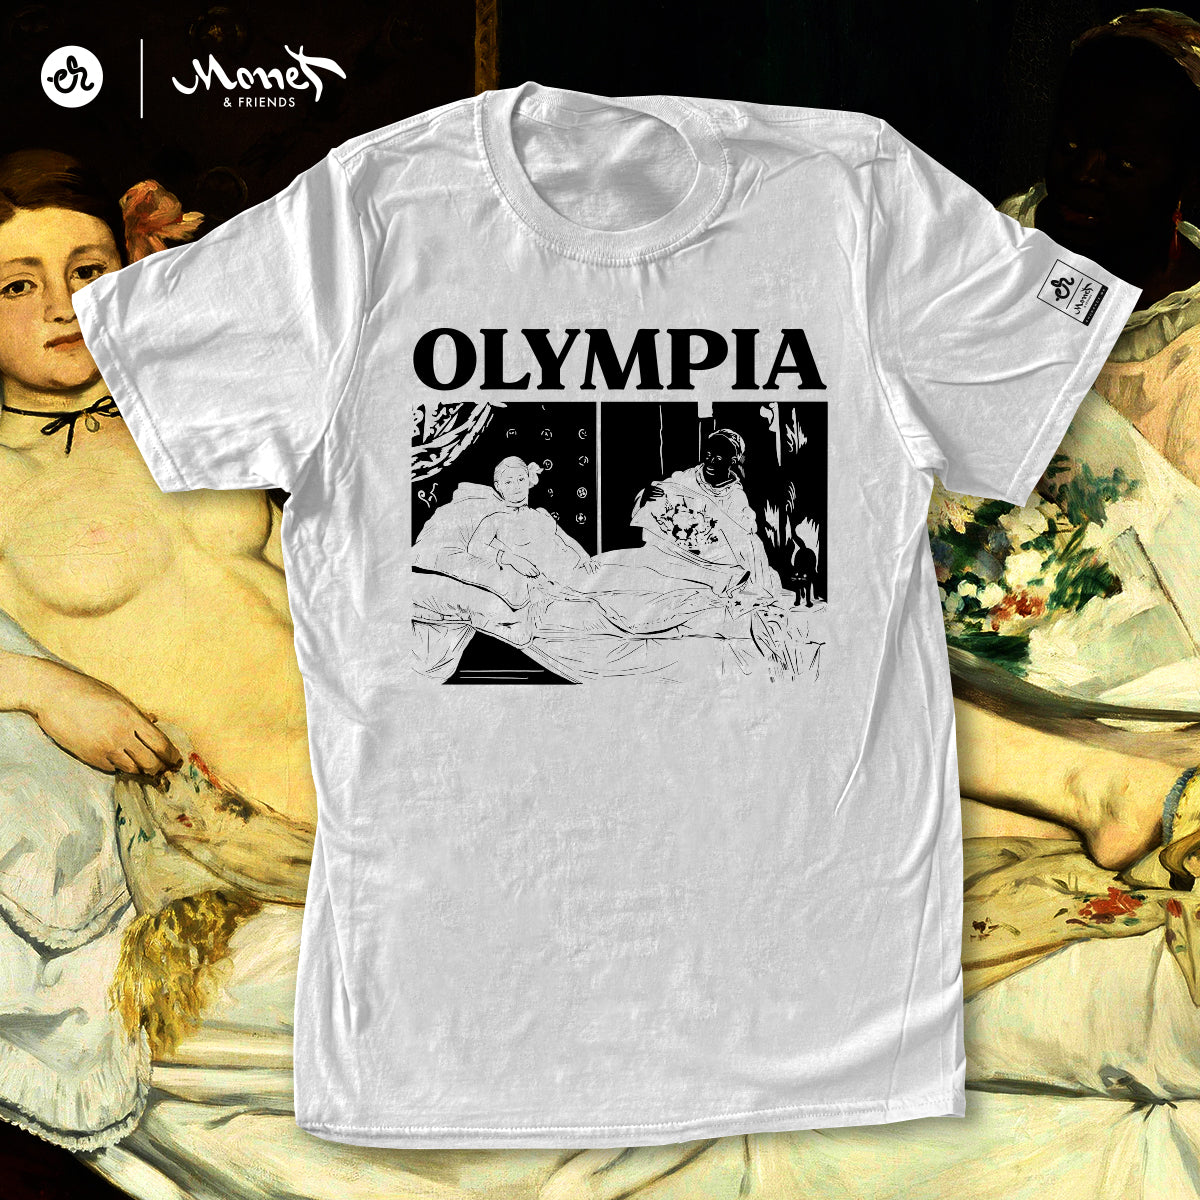 Playera Inspirada en Monet & Friends - Olympia